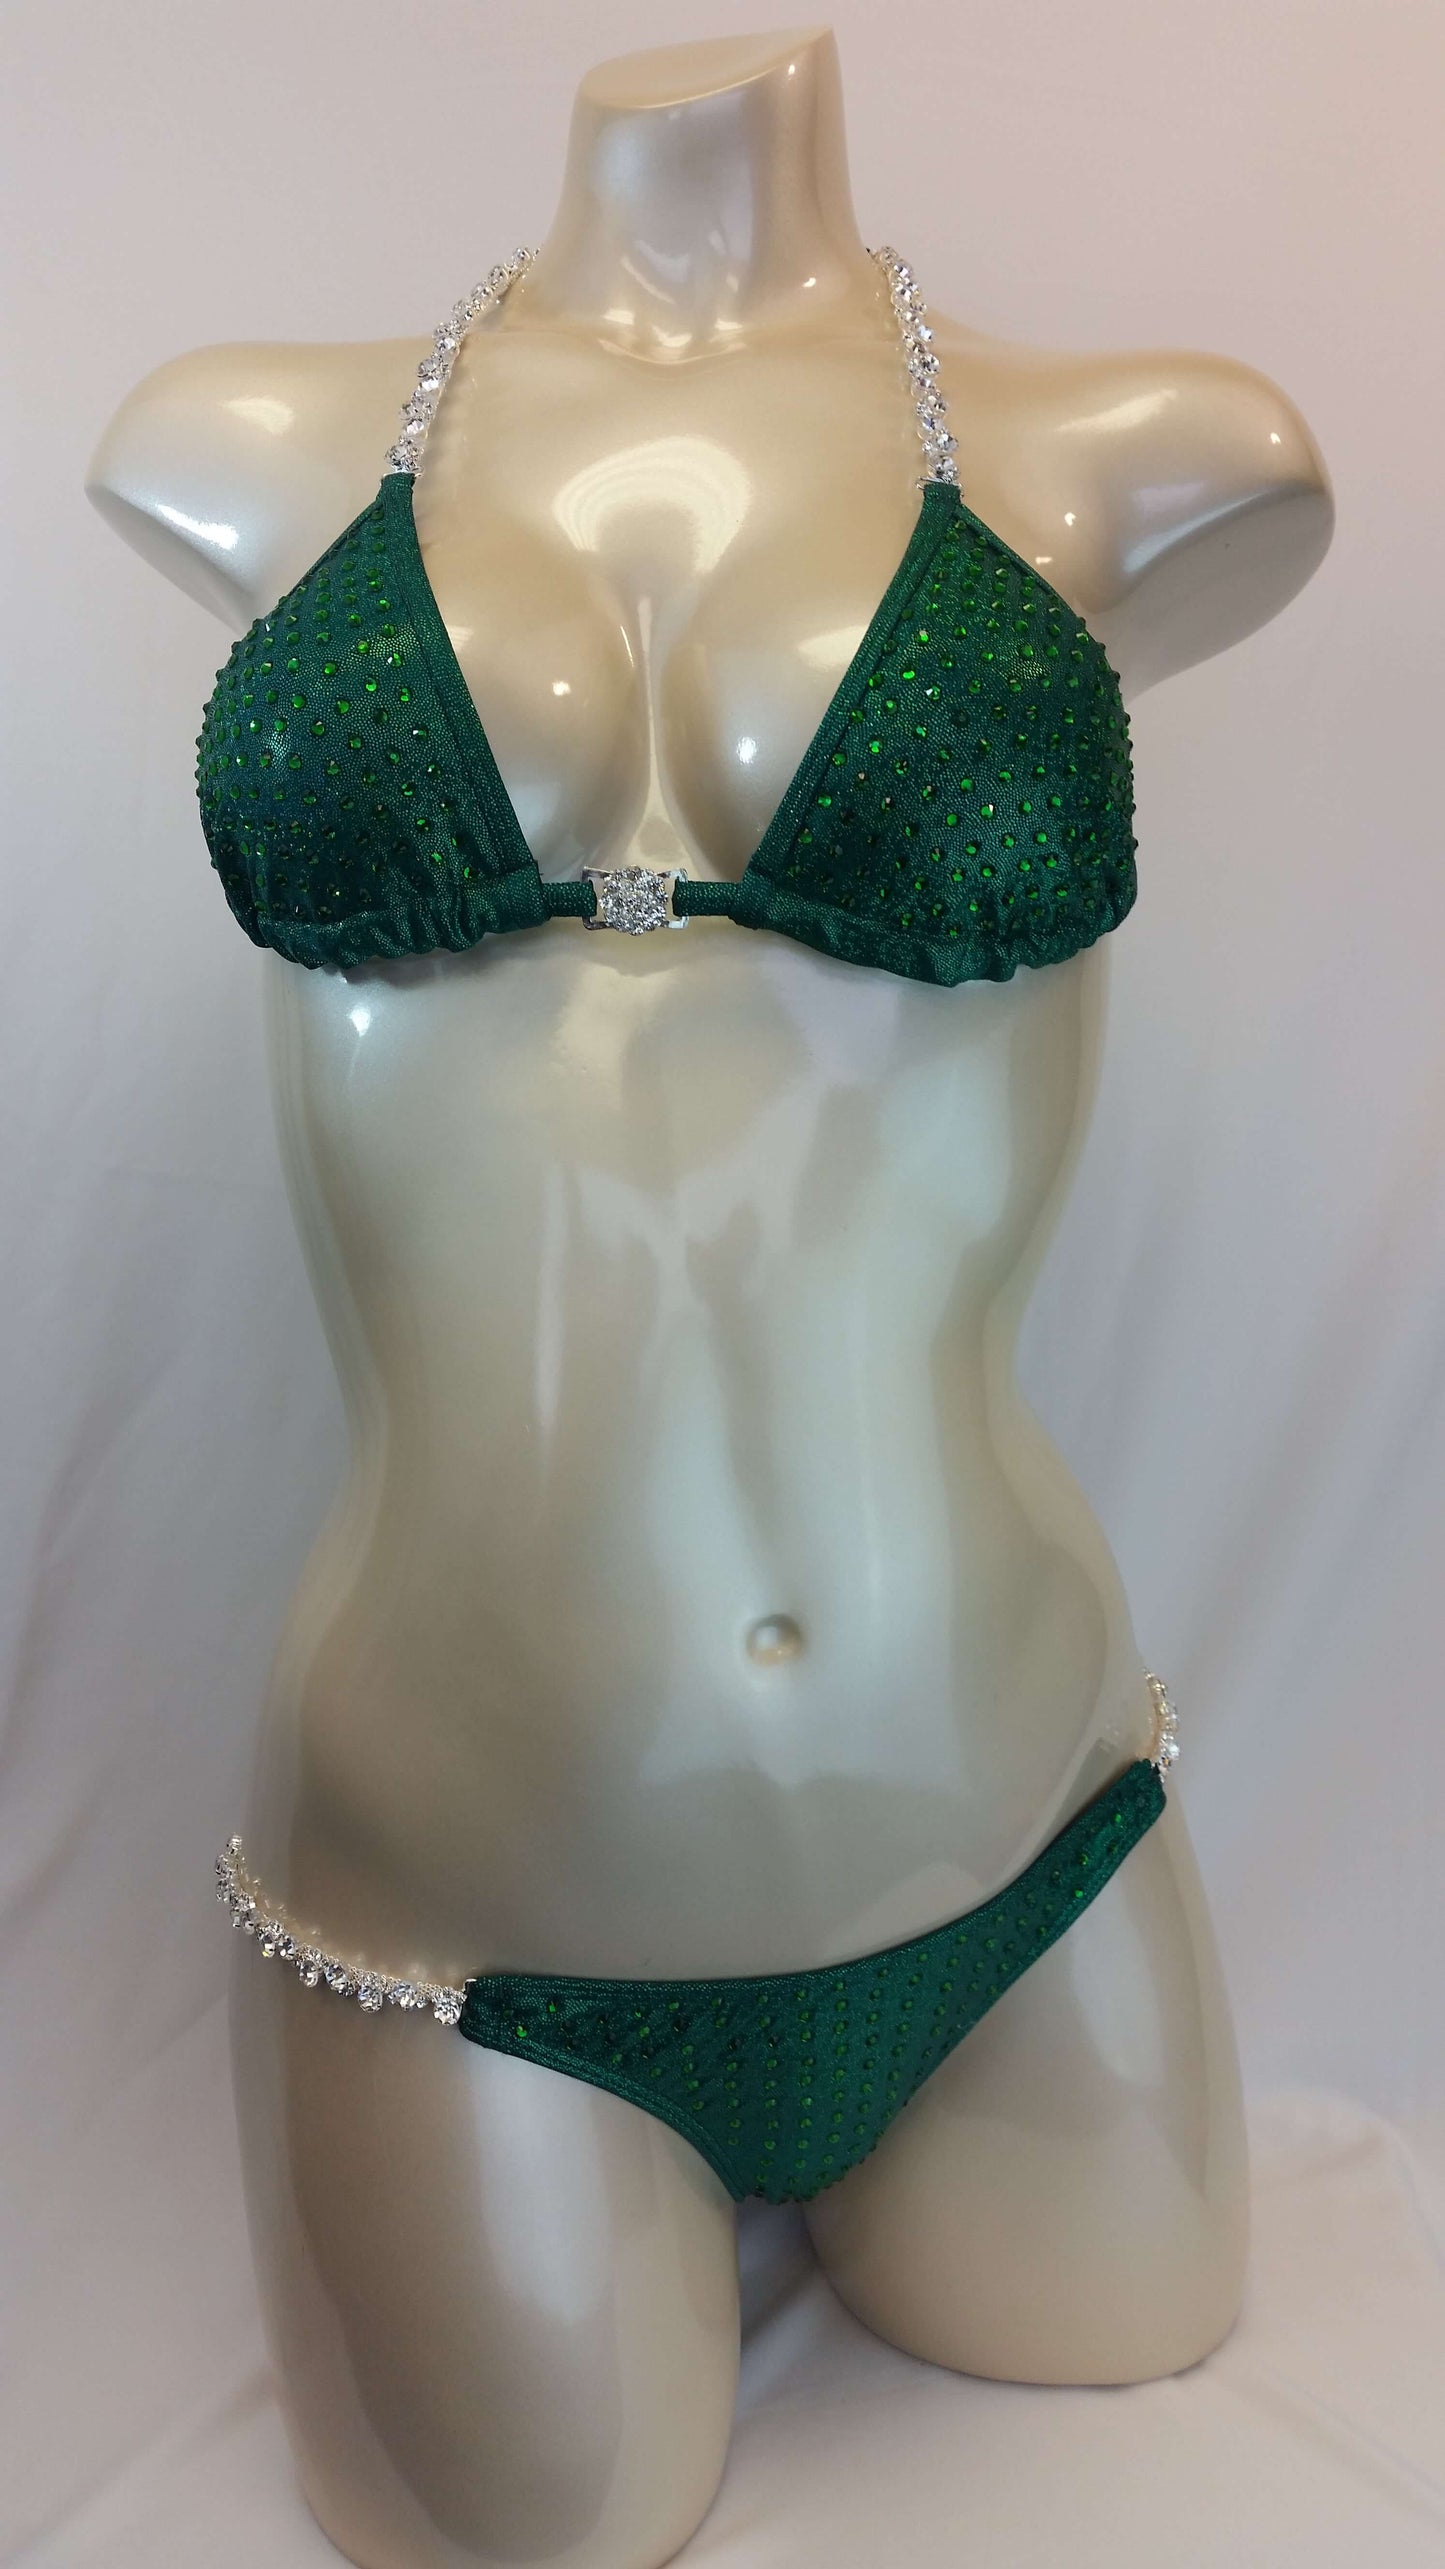 Emerald green Figure suit bikini with Emerald green rhinestones